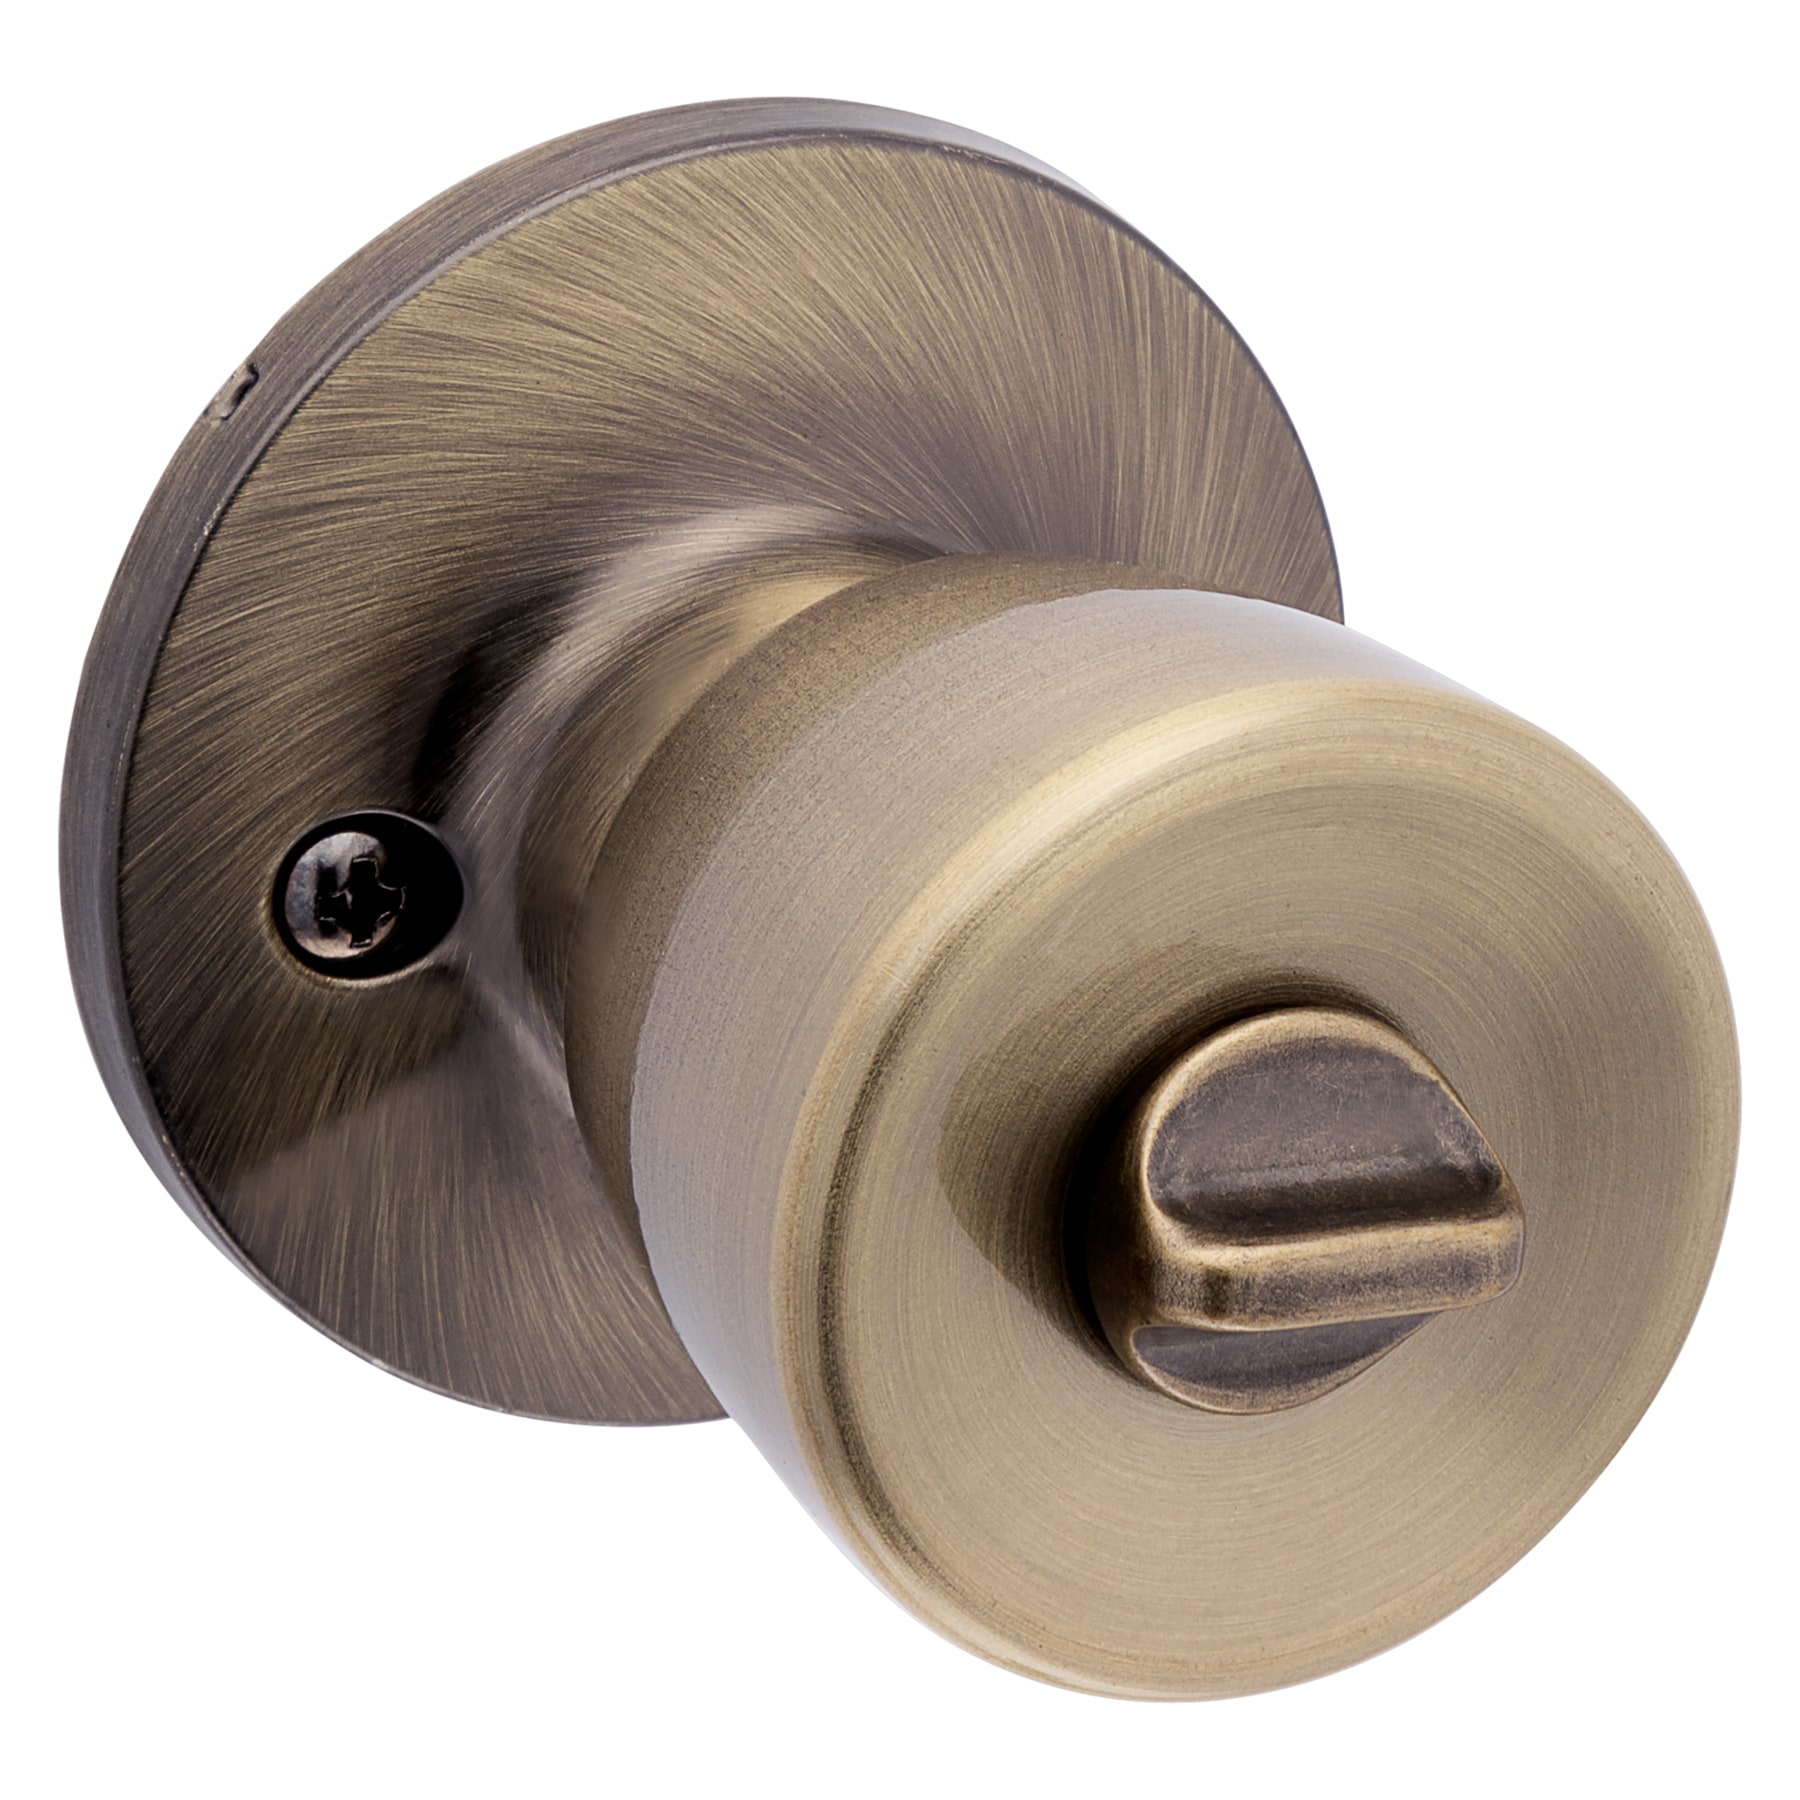 Small brass shutter knobs